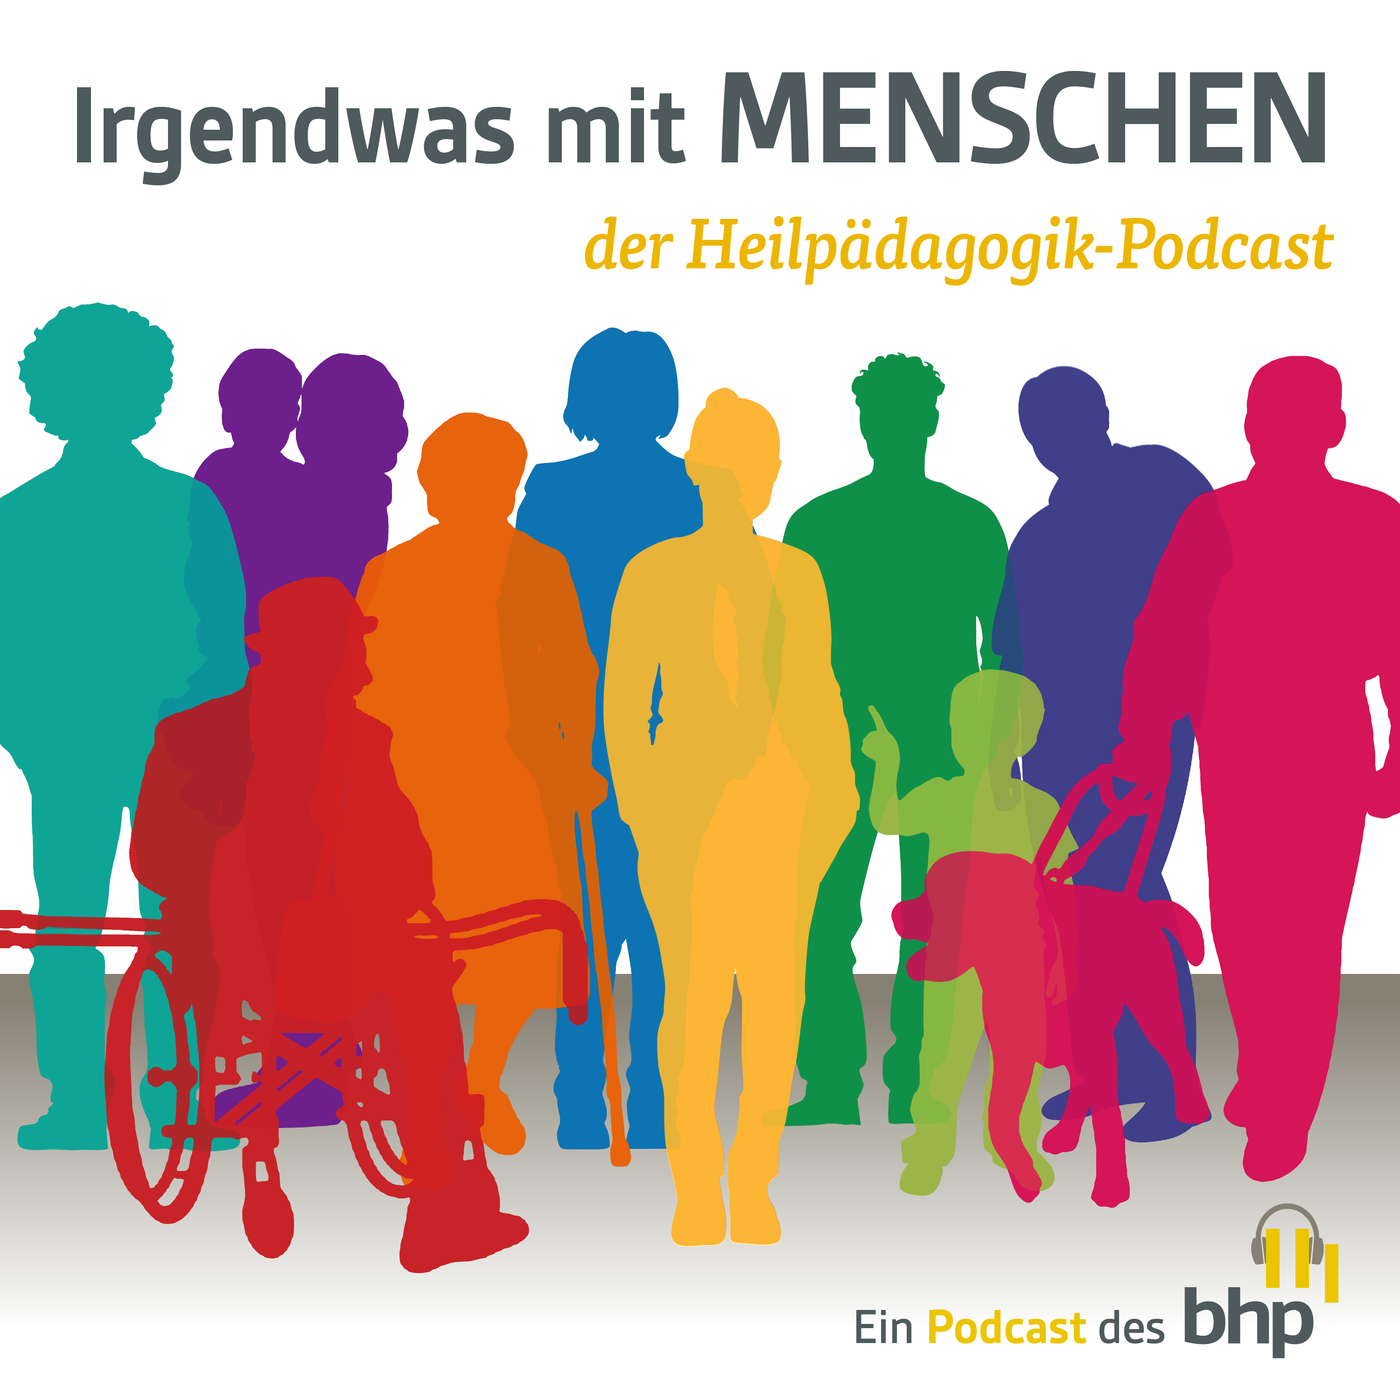 Heilpädagogik-Podcast - Was ist neu in der zweiten Staffel?